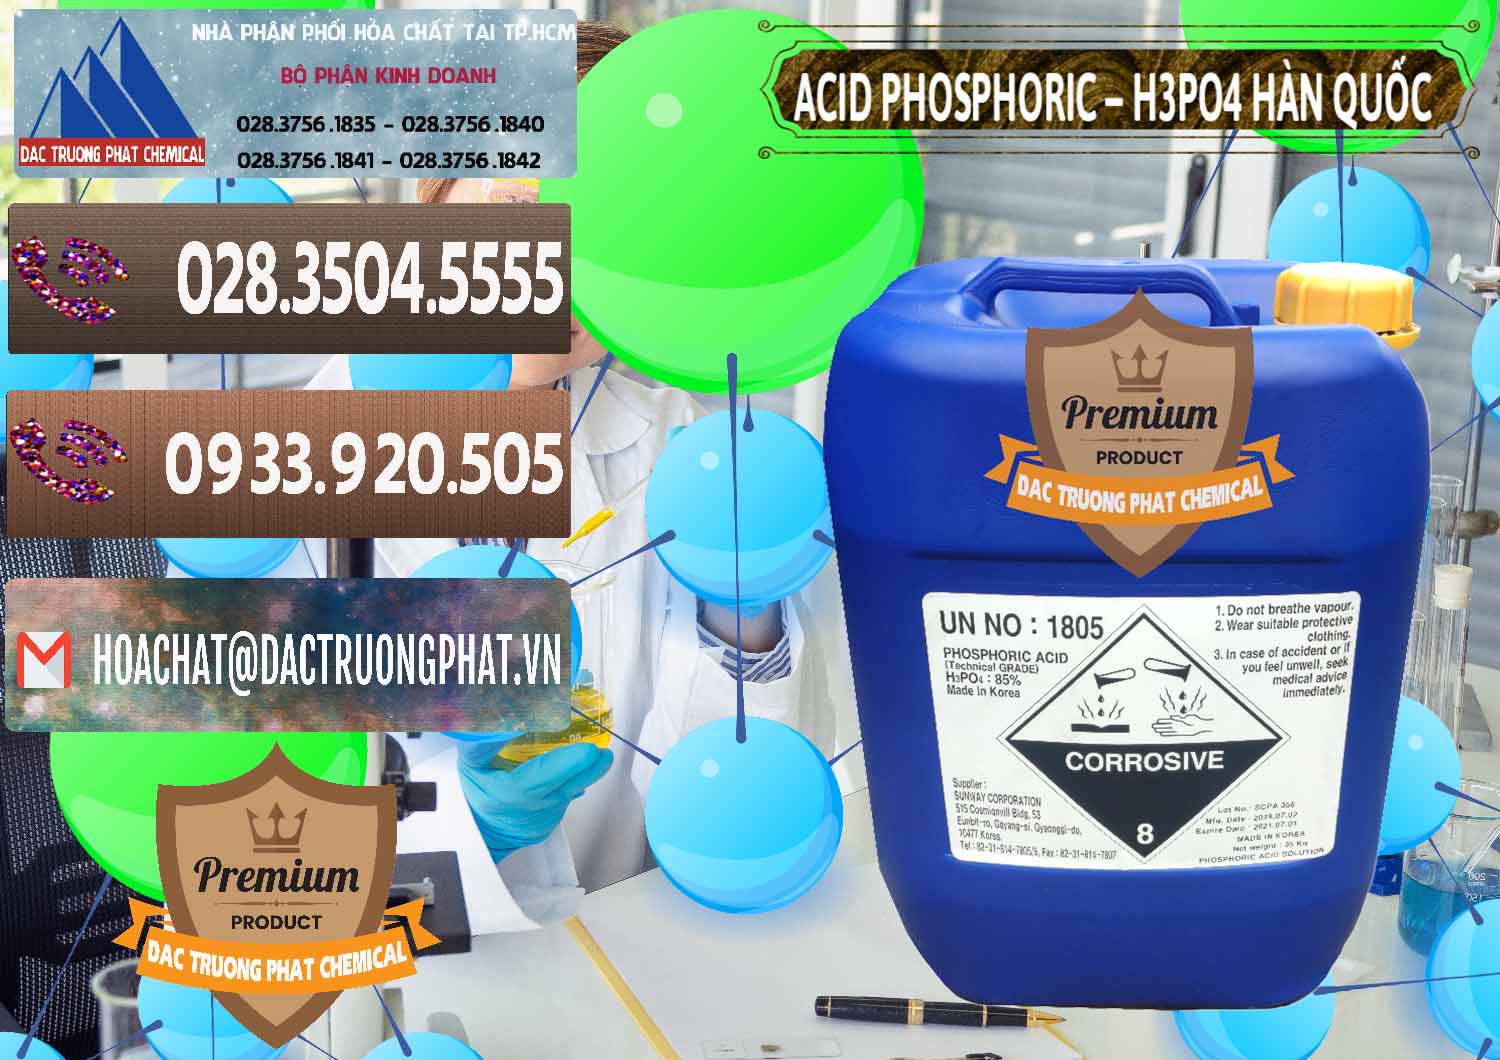 Cty bán _ cung cấp Acid Phosphoric – H3PO4 85% Can Xanh Hàn Quốc Korea - 0016 - Cty cung cấp _ kinh doanh hóa chất tại TP.HCM - hoachatviet.net